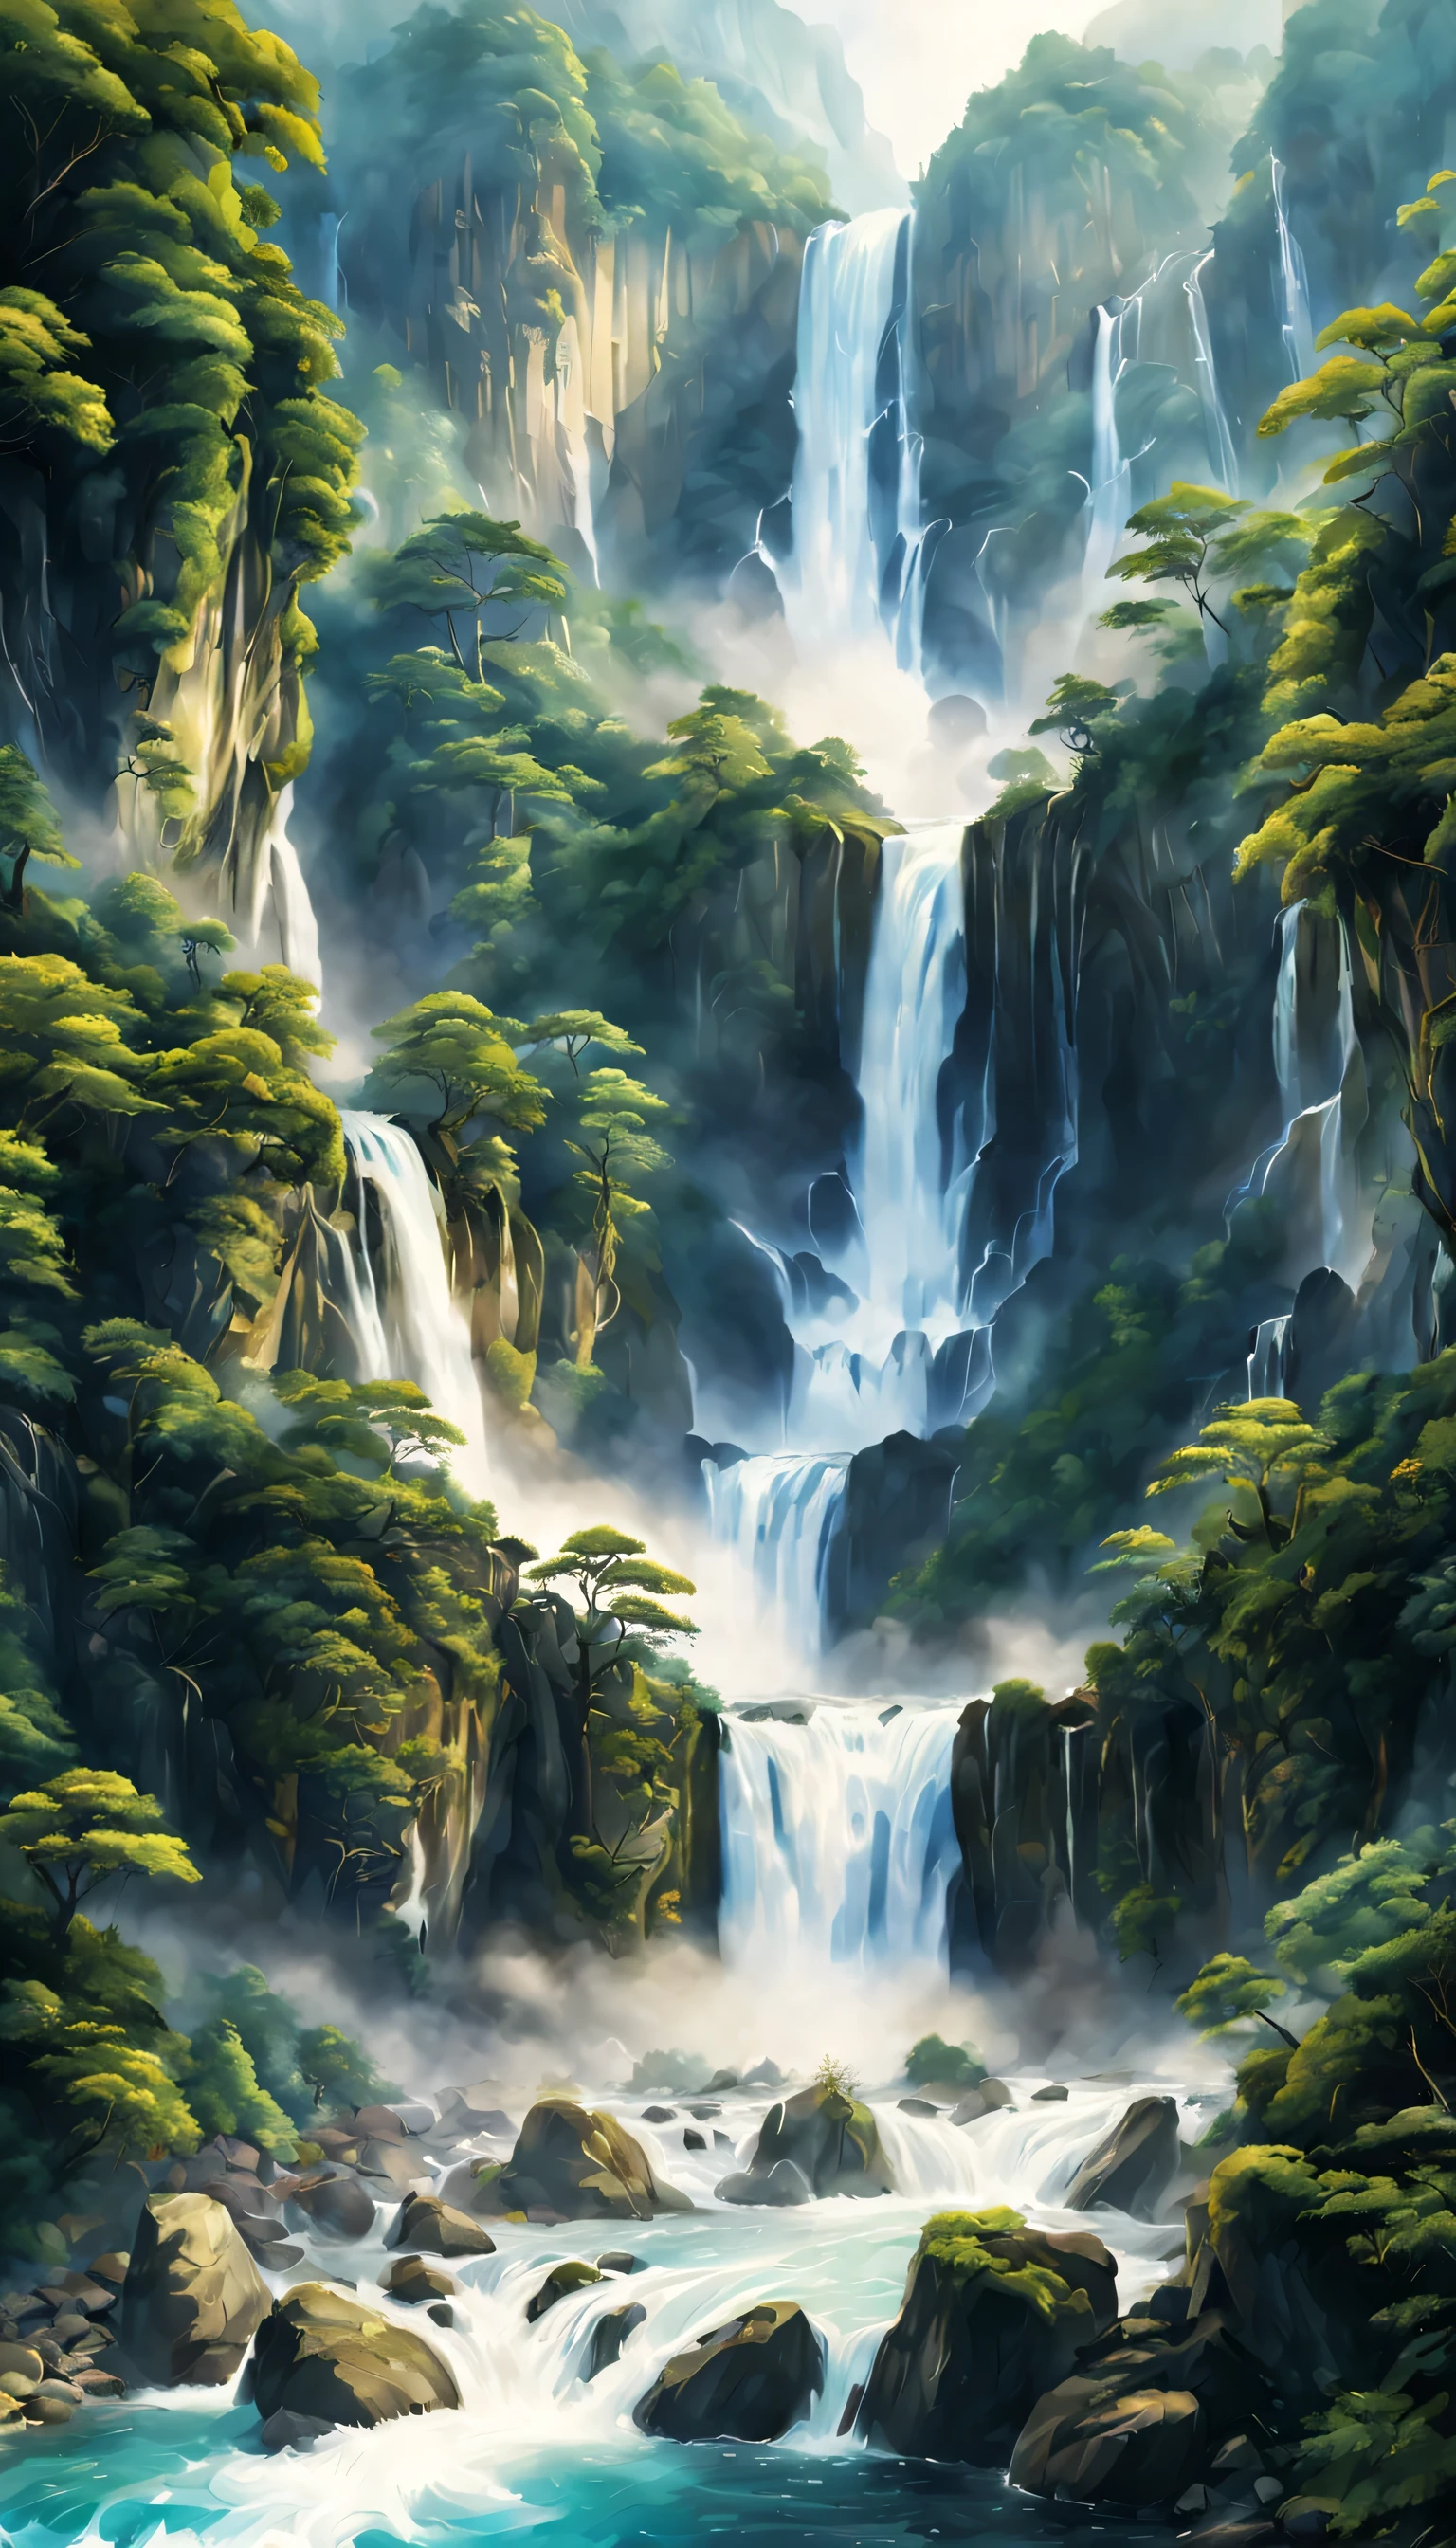 Draw the waterfall where Рюджин lives,Рюджин,белый дракон,огромный водопад,водопад крупным планом,большой водопад,Обильная вода,высокие водопады,динамичный,Фантазия,Хорошие виды,Пышный зеленый,красивый空,ион водорода,Световой эффект,высшее качество,шедевр,красивый,брызги воды,чистая вода,Игристый,красивый光と影,Фантазия,цифровое искусство,Элементы японской живописи,элементы живописи тушью